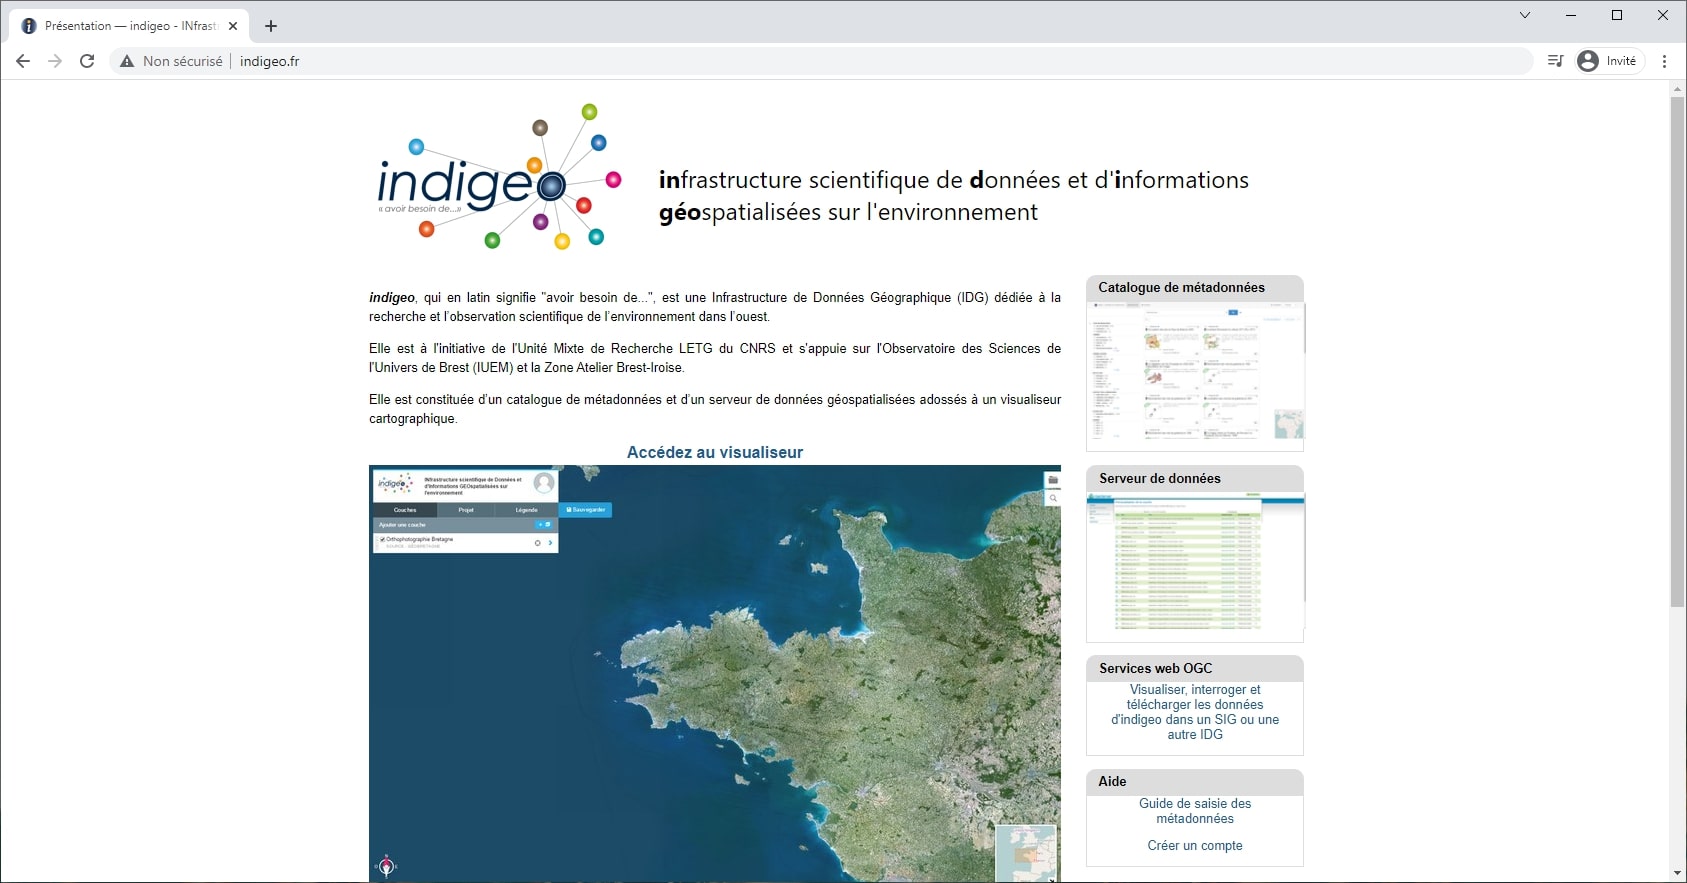 Interface web UMR Littoral, Environnement, Télédétection, Géomatique (CNRS - Nantes, Brest, Rennes, Caen)